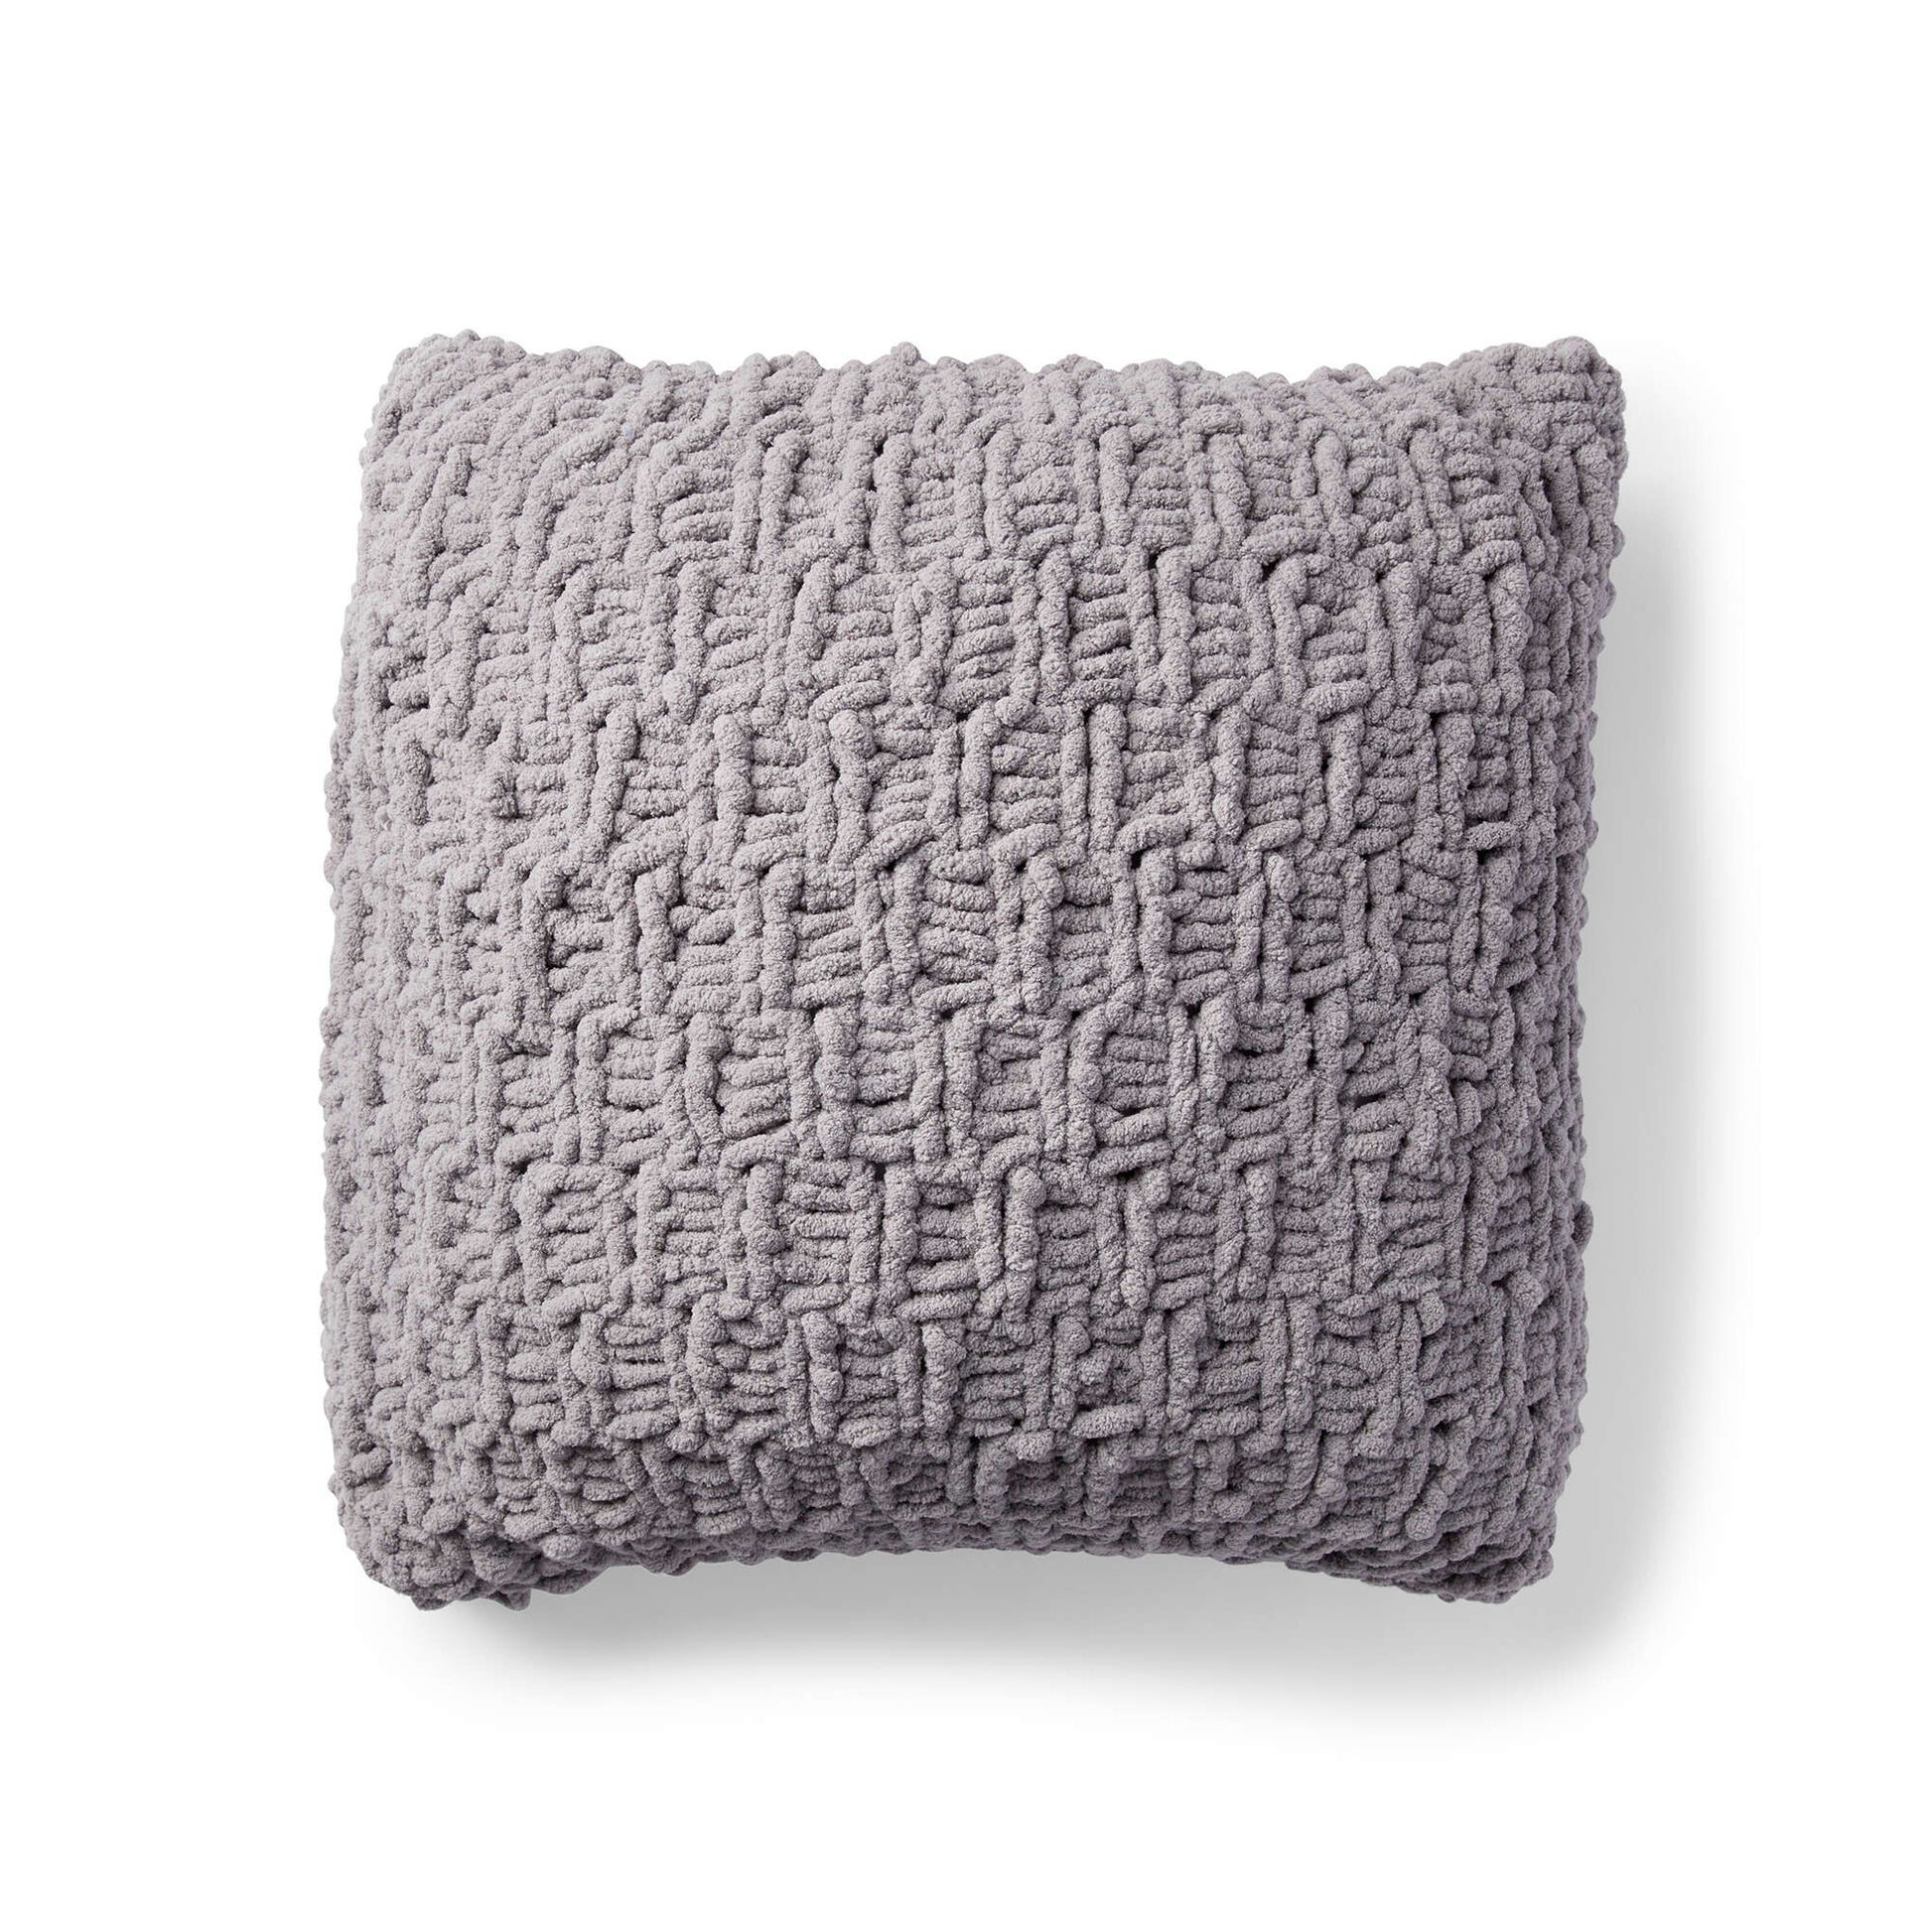 Free Bernat Rambling Knit Cushion Pattern